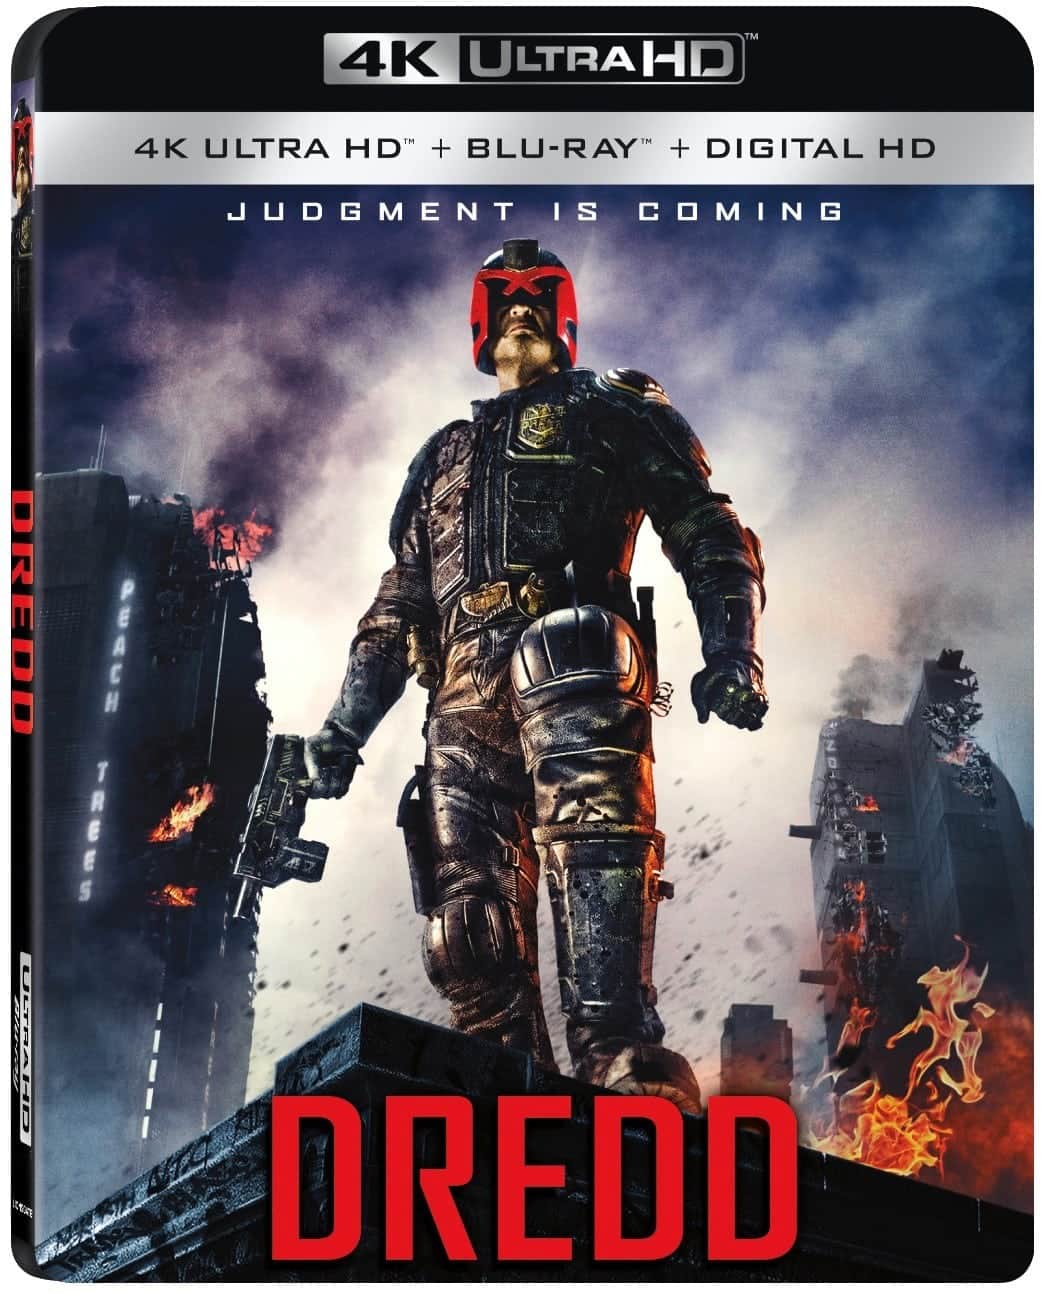 Dredd 4K HDR 2013 Ultra HD RIP